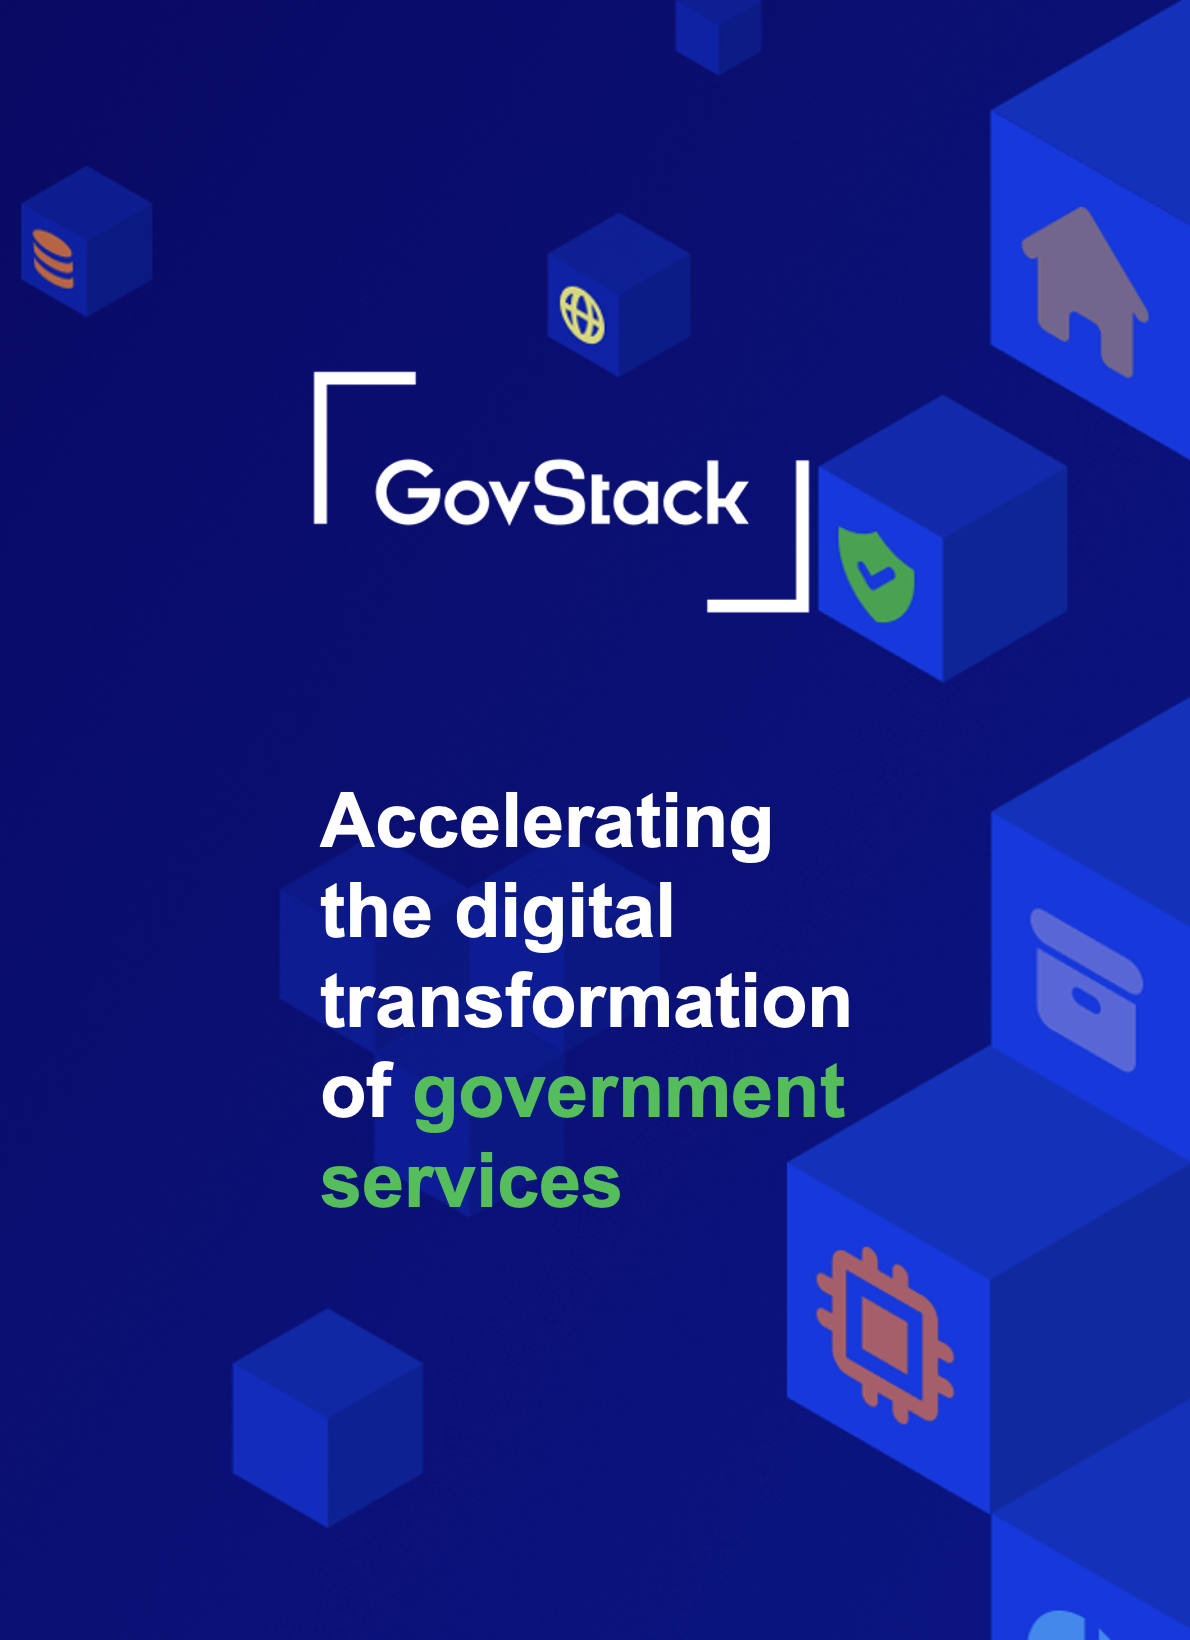 Инициатива GovStack помогает правительственным органам в создании устойчивой цифровой инфраструктуры и предоставлении цифровых услуг, ориентированных на человека. Узнайте, как извлечь пользу и внести свой вклад.